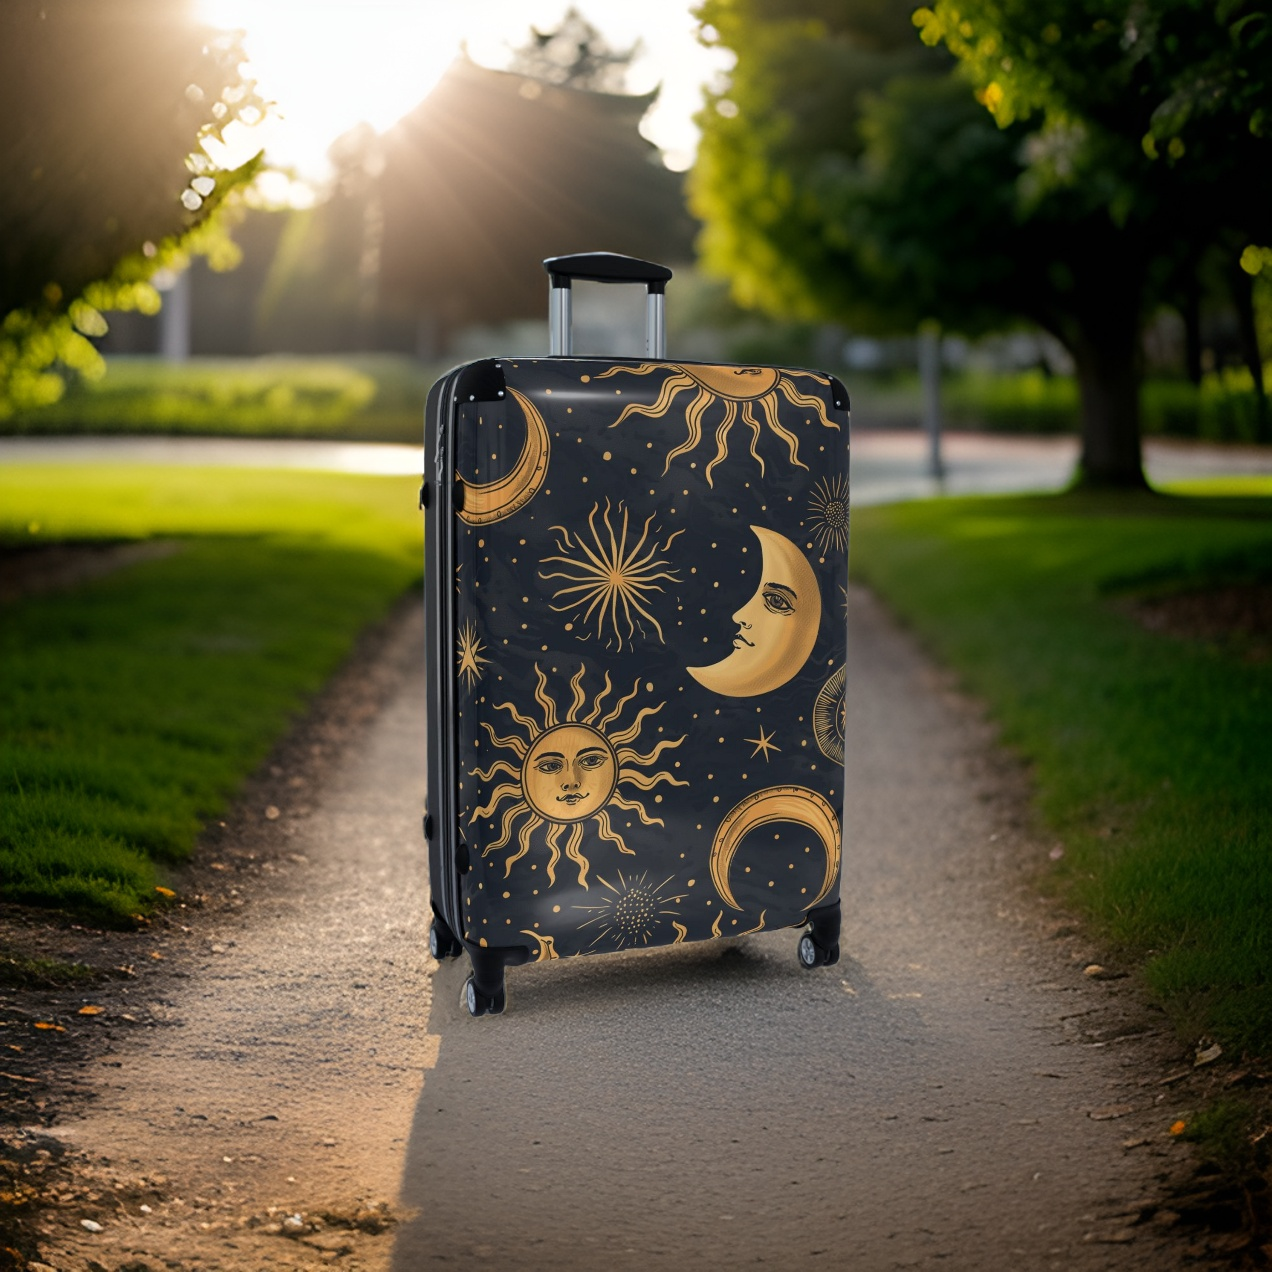 Sun & Moon Astrology Suitcase